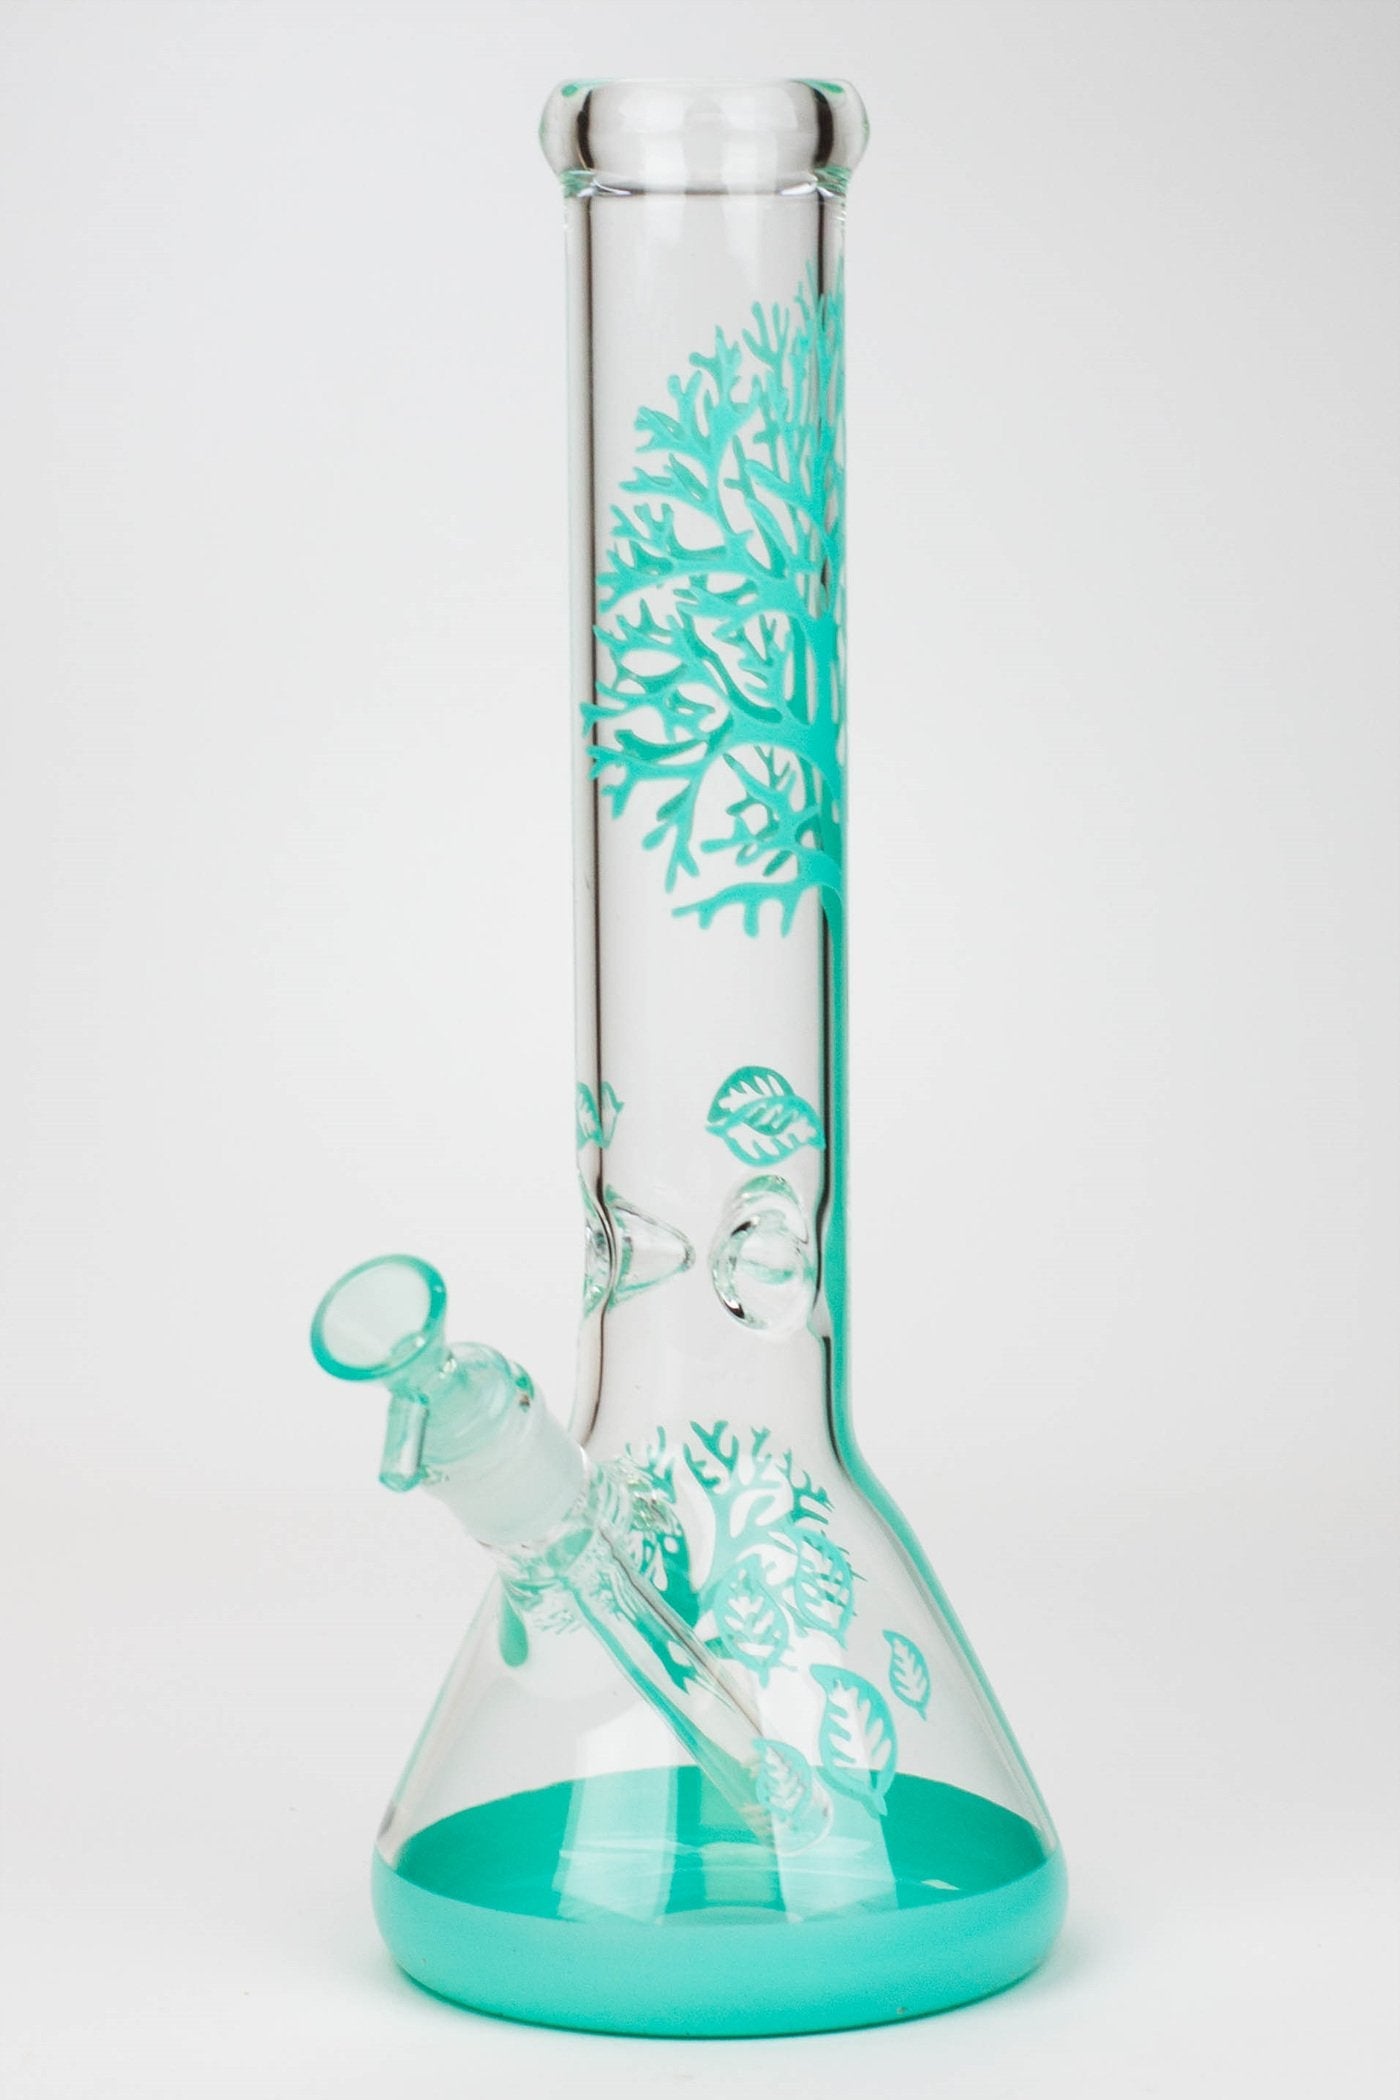 15" Tree of Life classic beaker glass bong Flower Power Packages 